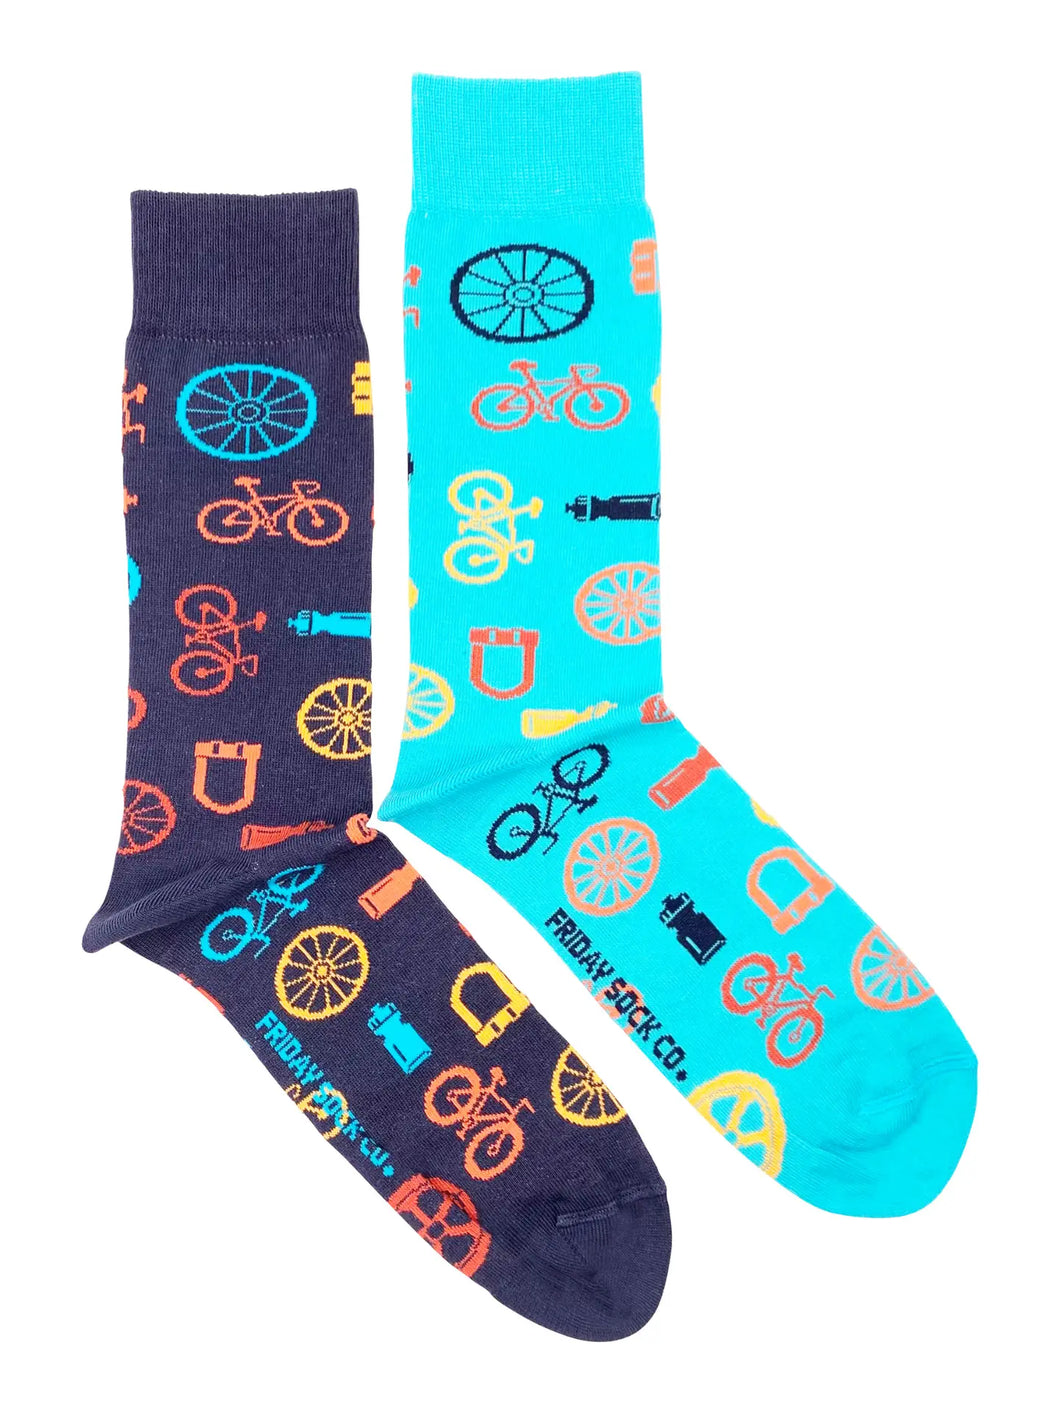 men's socks - bike parts